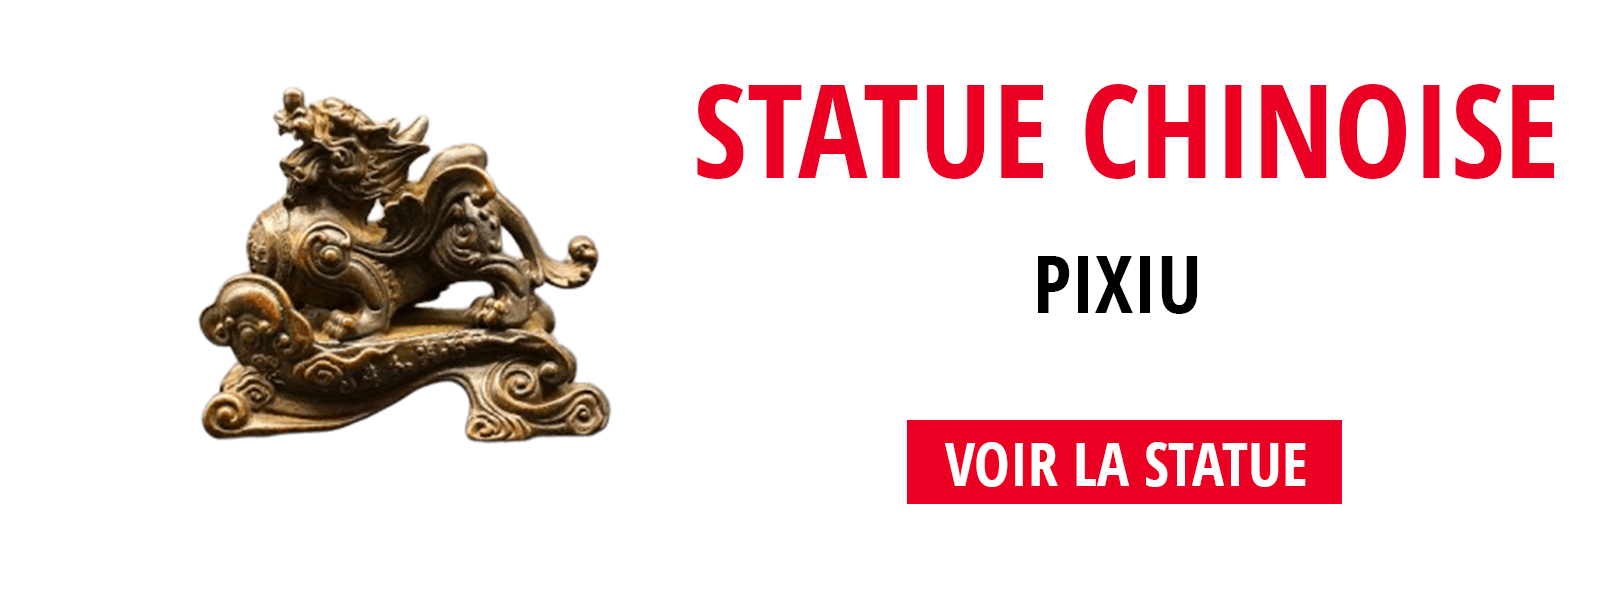 Statue Chinoise Pixiu